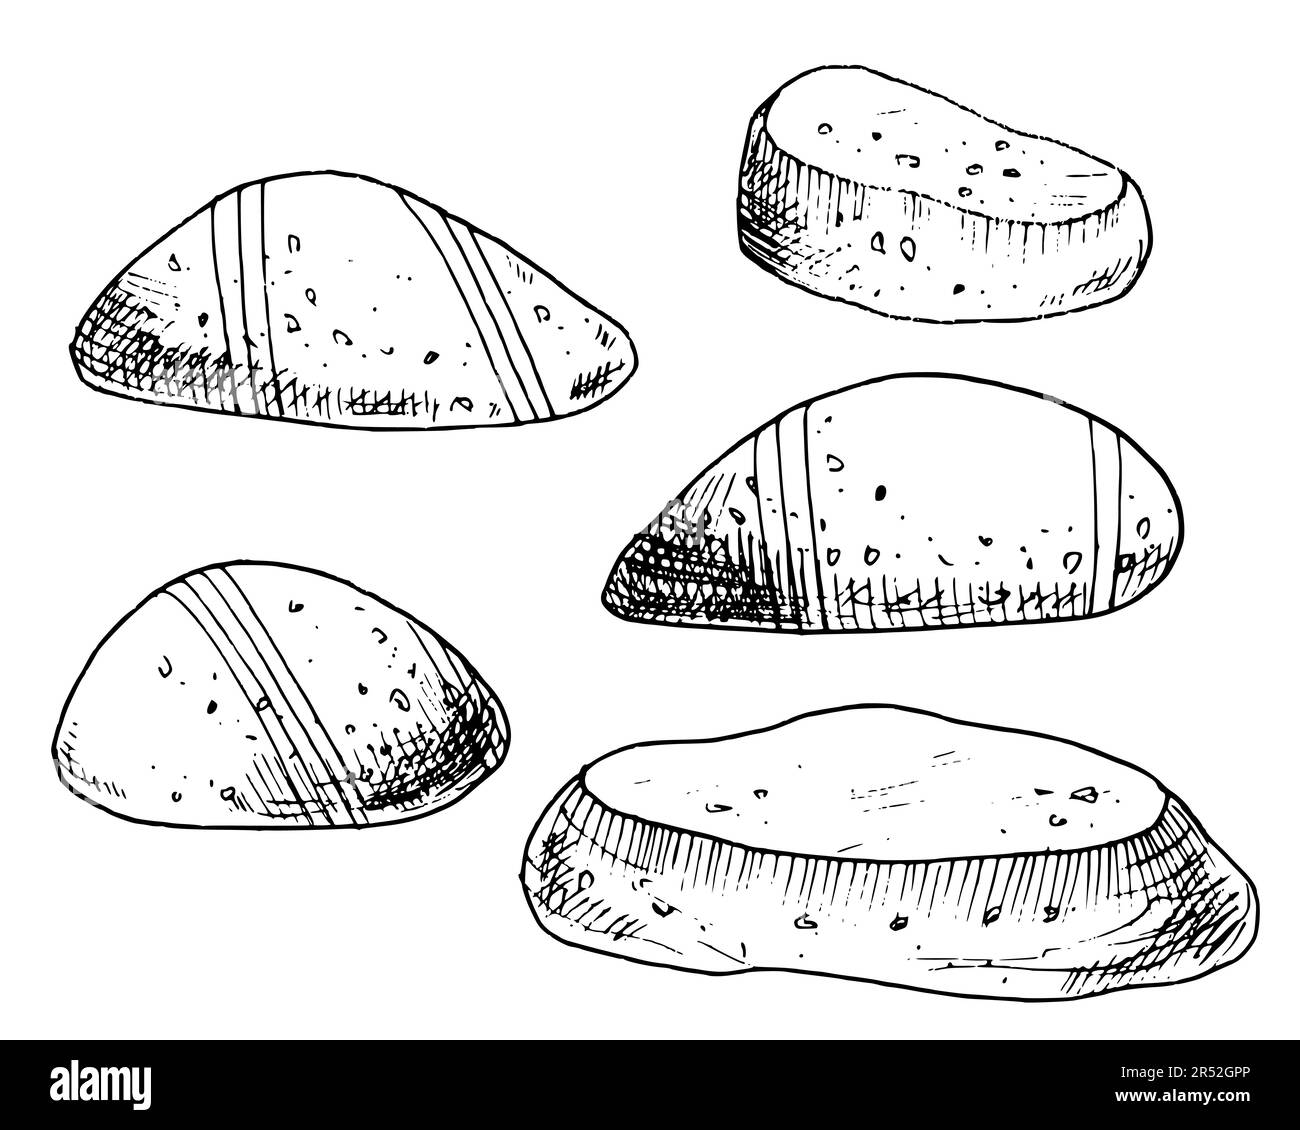 Set pietre vettoriali. Illustrazione disegnata a mano con ciottoli su sfondo bianco isolato in stile contorno. Disegno di rocce oceaniche lisce a strisce. Schizzo di minerali subacquei dipinti con inchiostri neri. Illustrazione Vettoriale